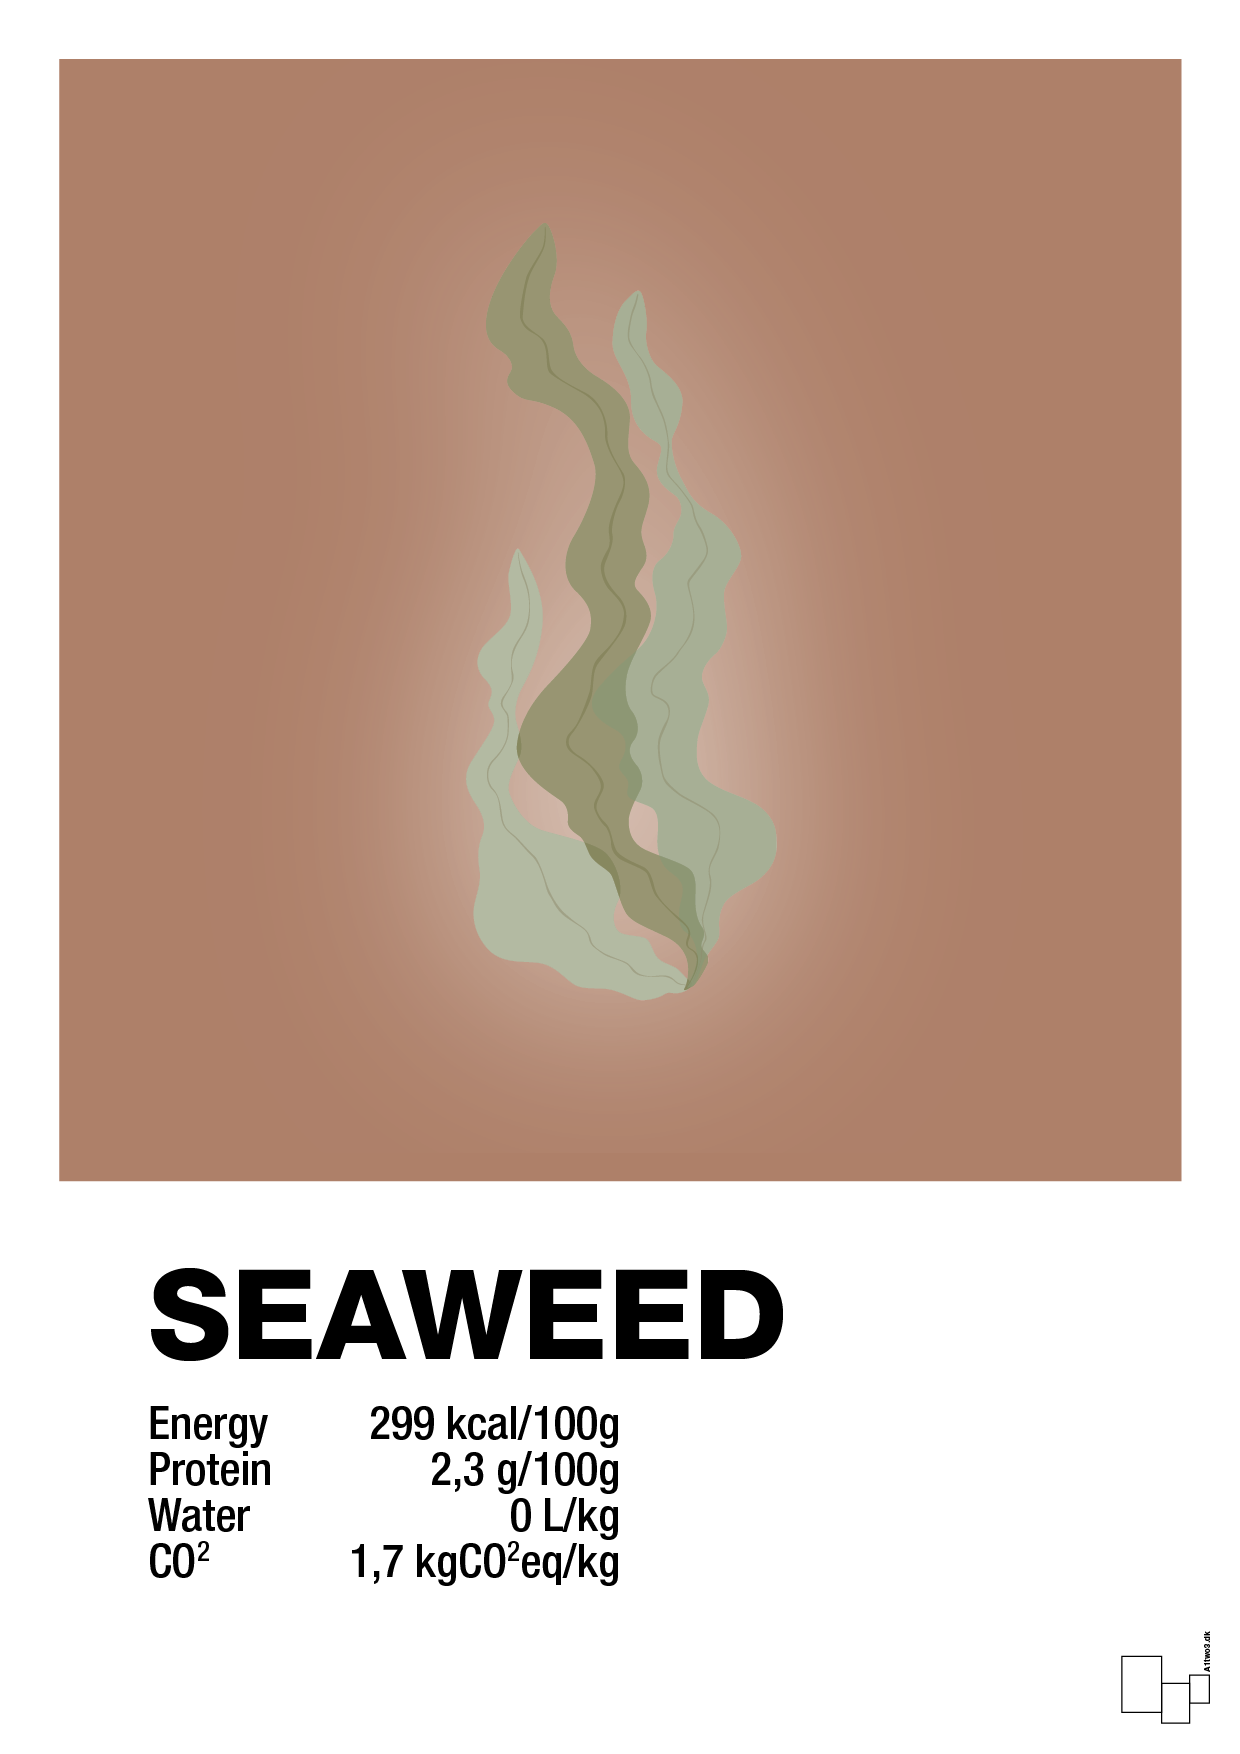 seaweed nutrition og miljø - Plakat med Mad & Drikke i Cider Spice